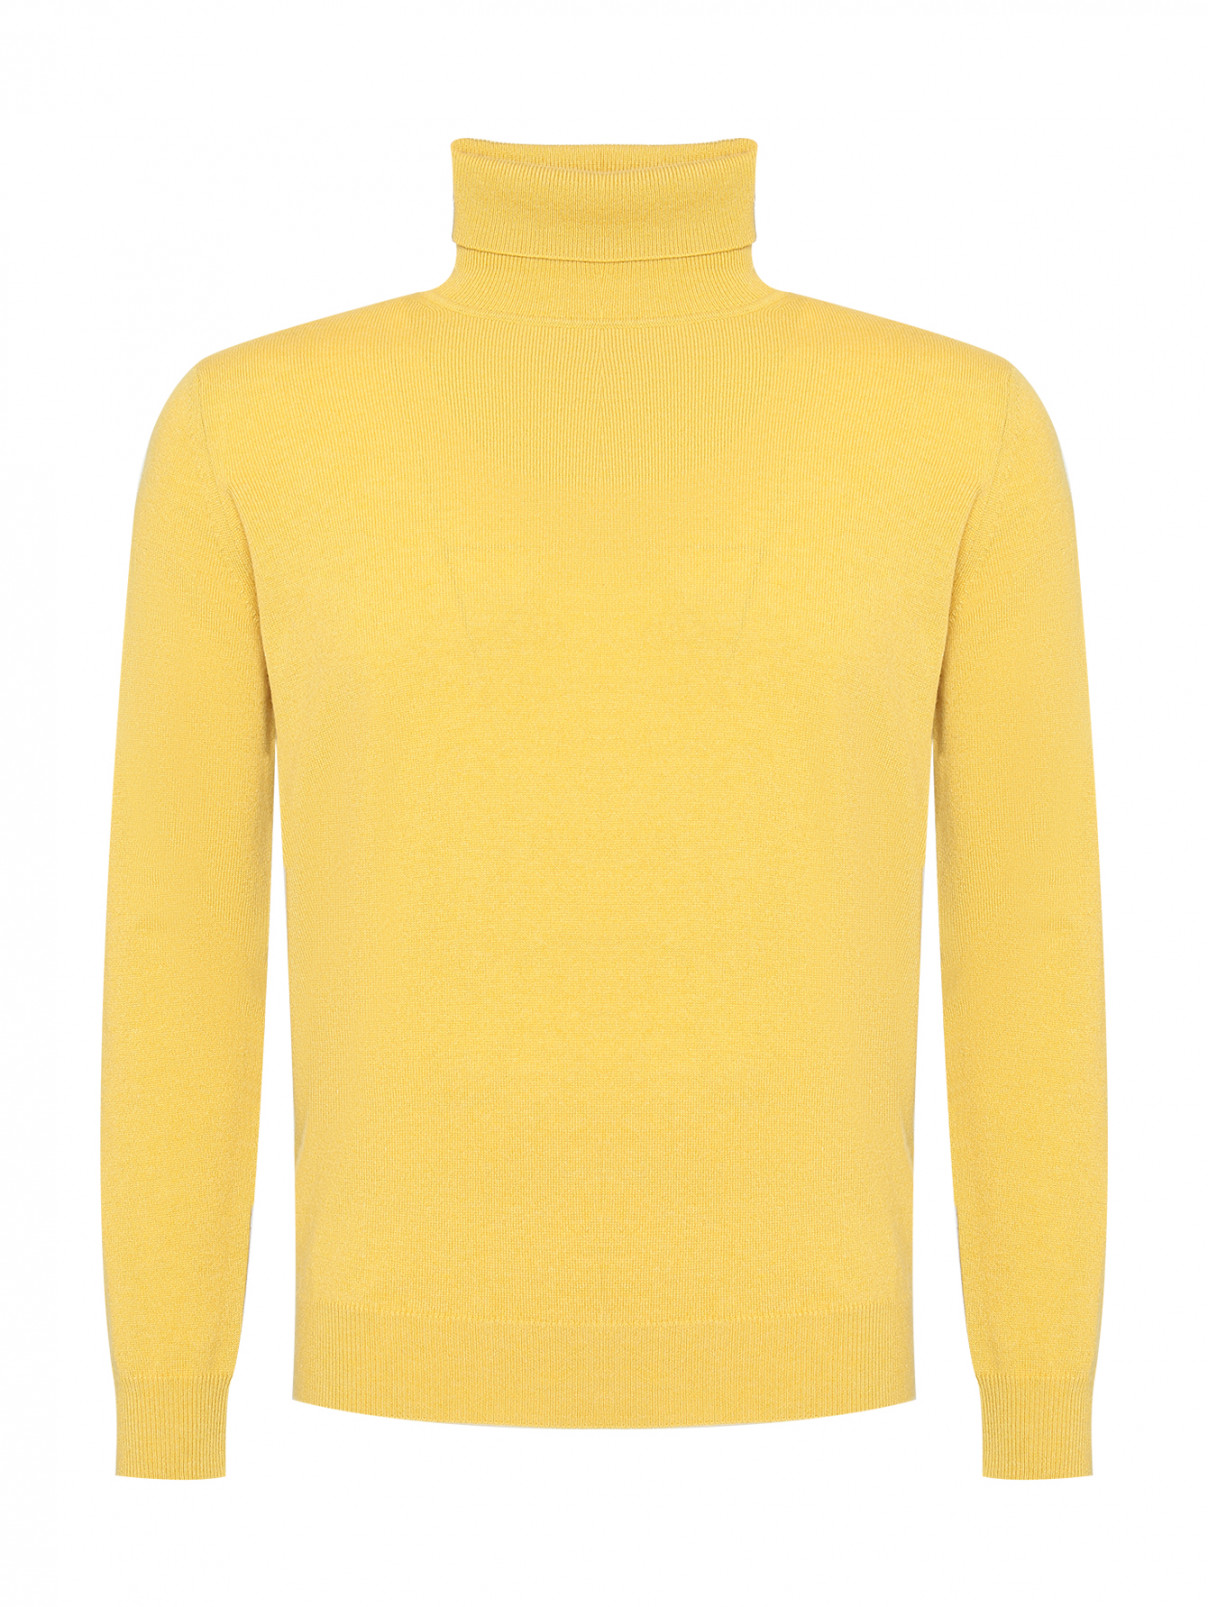 Базовый свитер из кашемира Kangra Cashmere  –  Общий вид  – Цвет:  Желтый